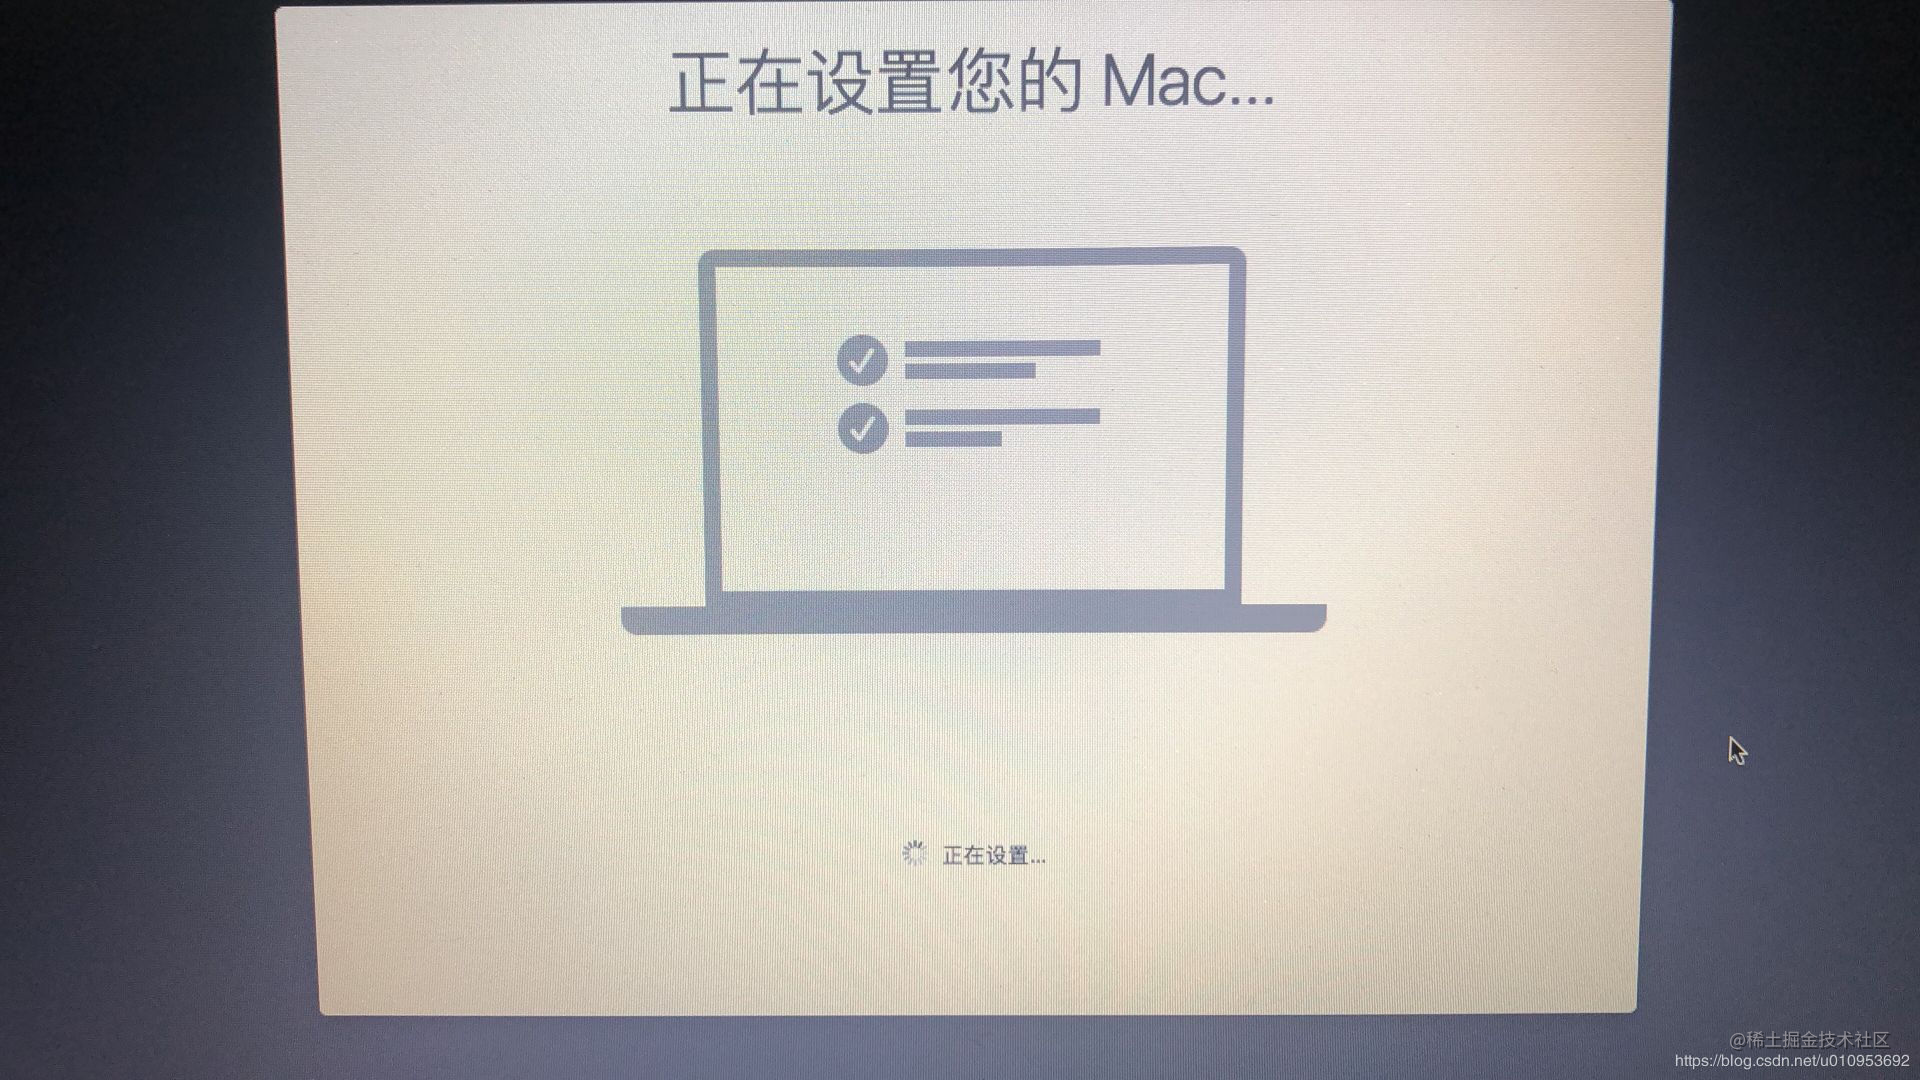 正在设置您的Mac